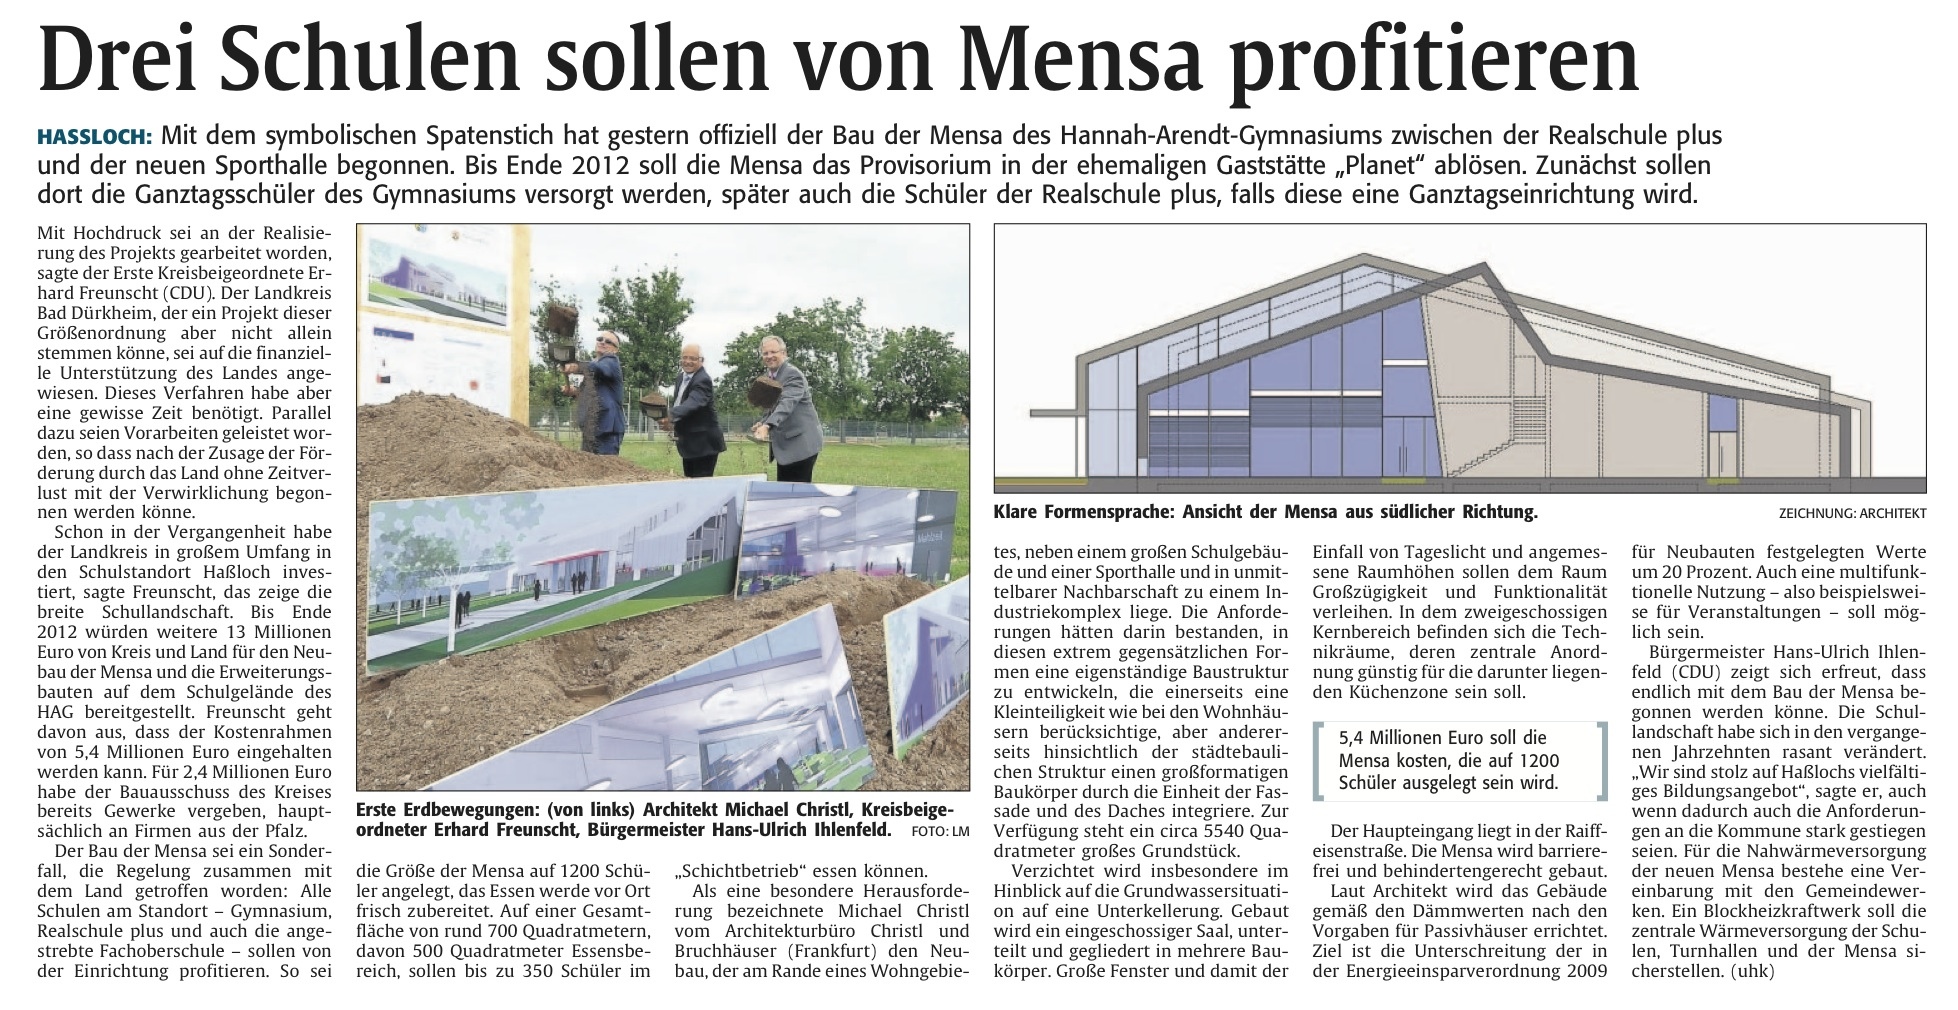 Rheinpfalz am 17.06.2011: Drei Schulen sollen von Mensa profitieren